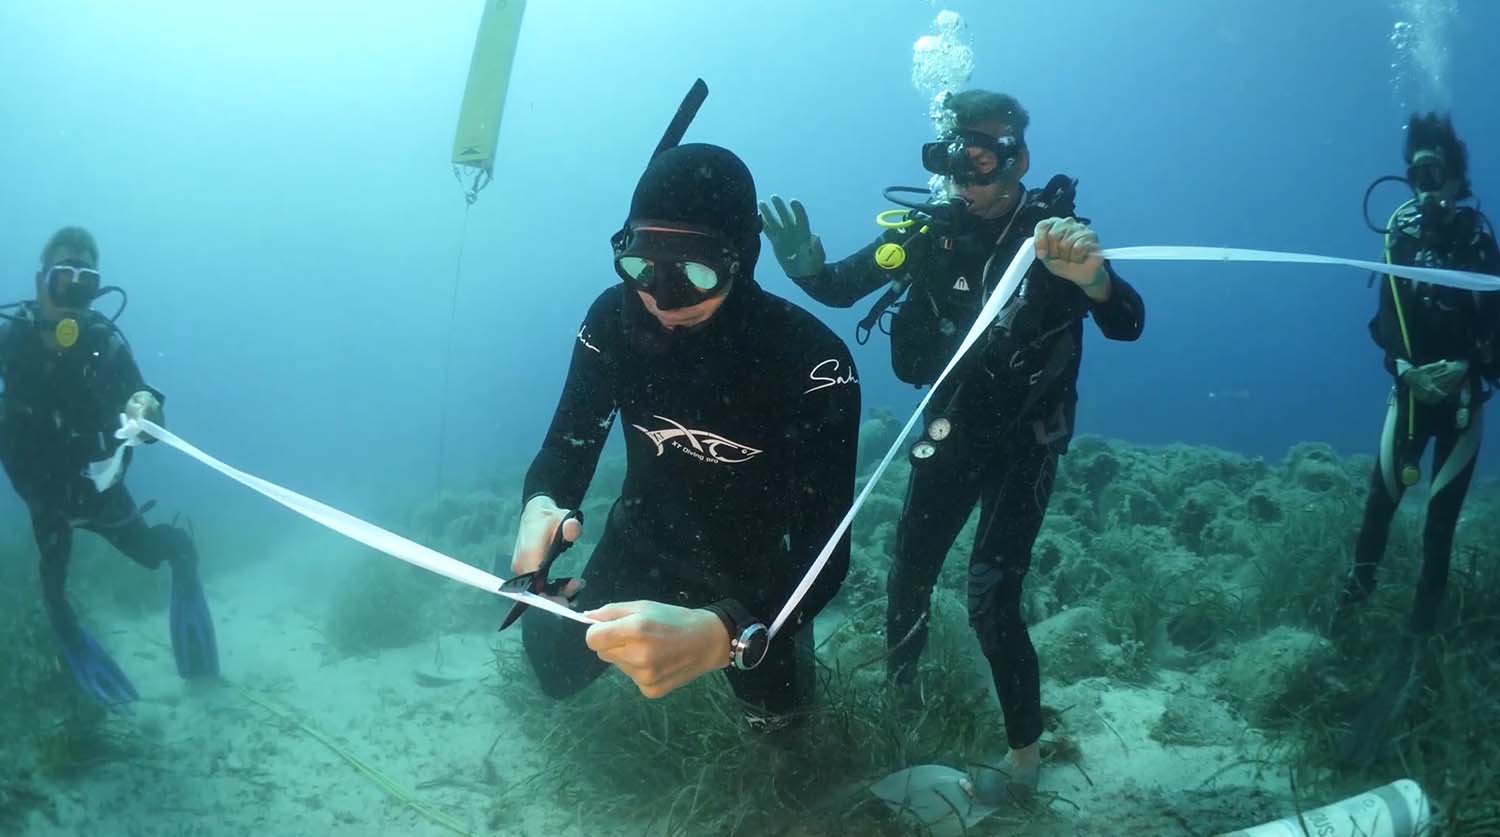 Τα πρώτα εγκαίνια στον κόσμο κάτω από το νερό έγιναν στην Αλόννησο - Δείτε φωτό και βίντεο